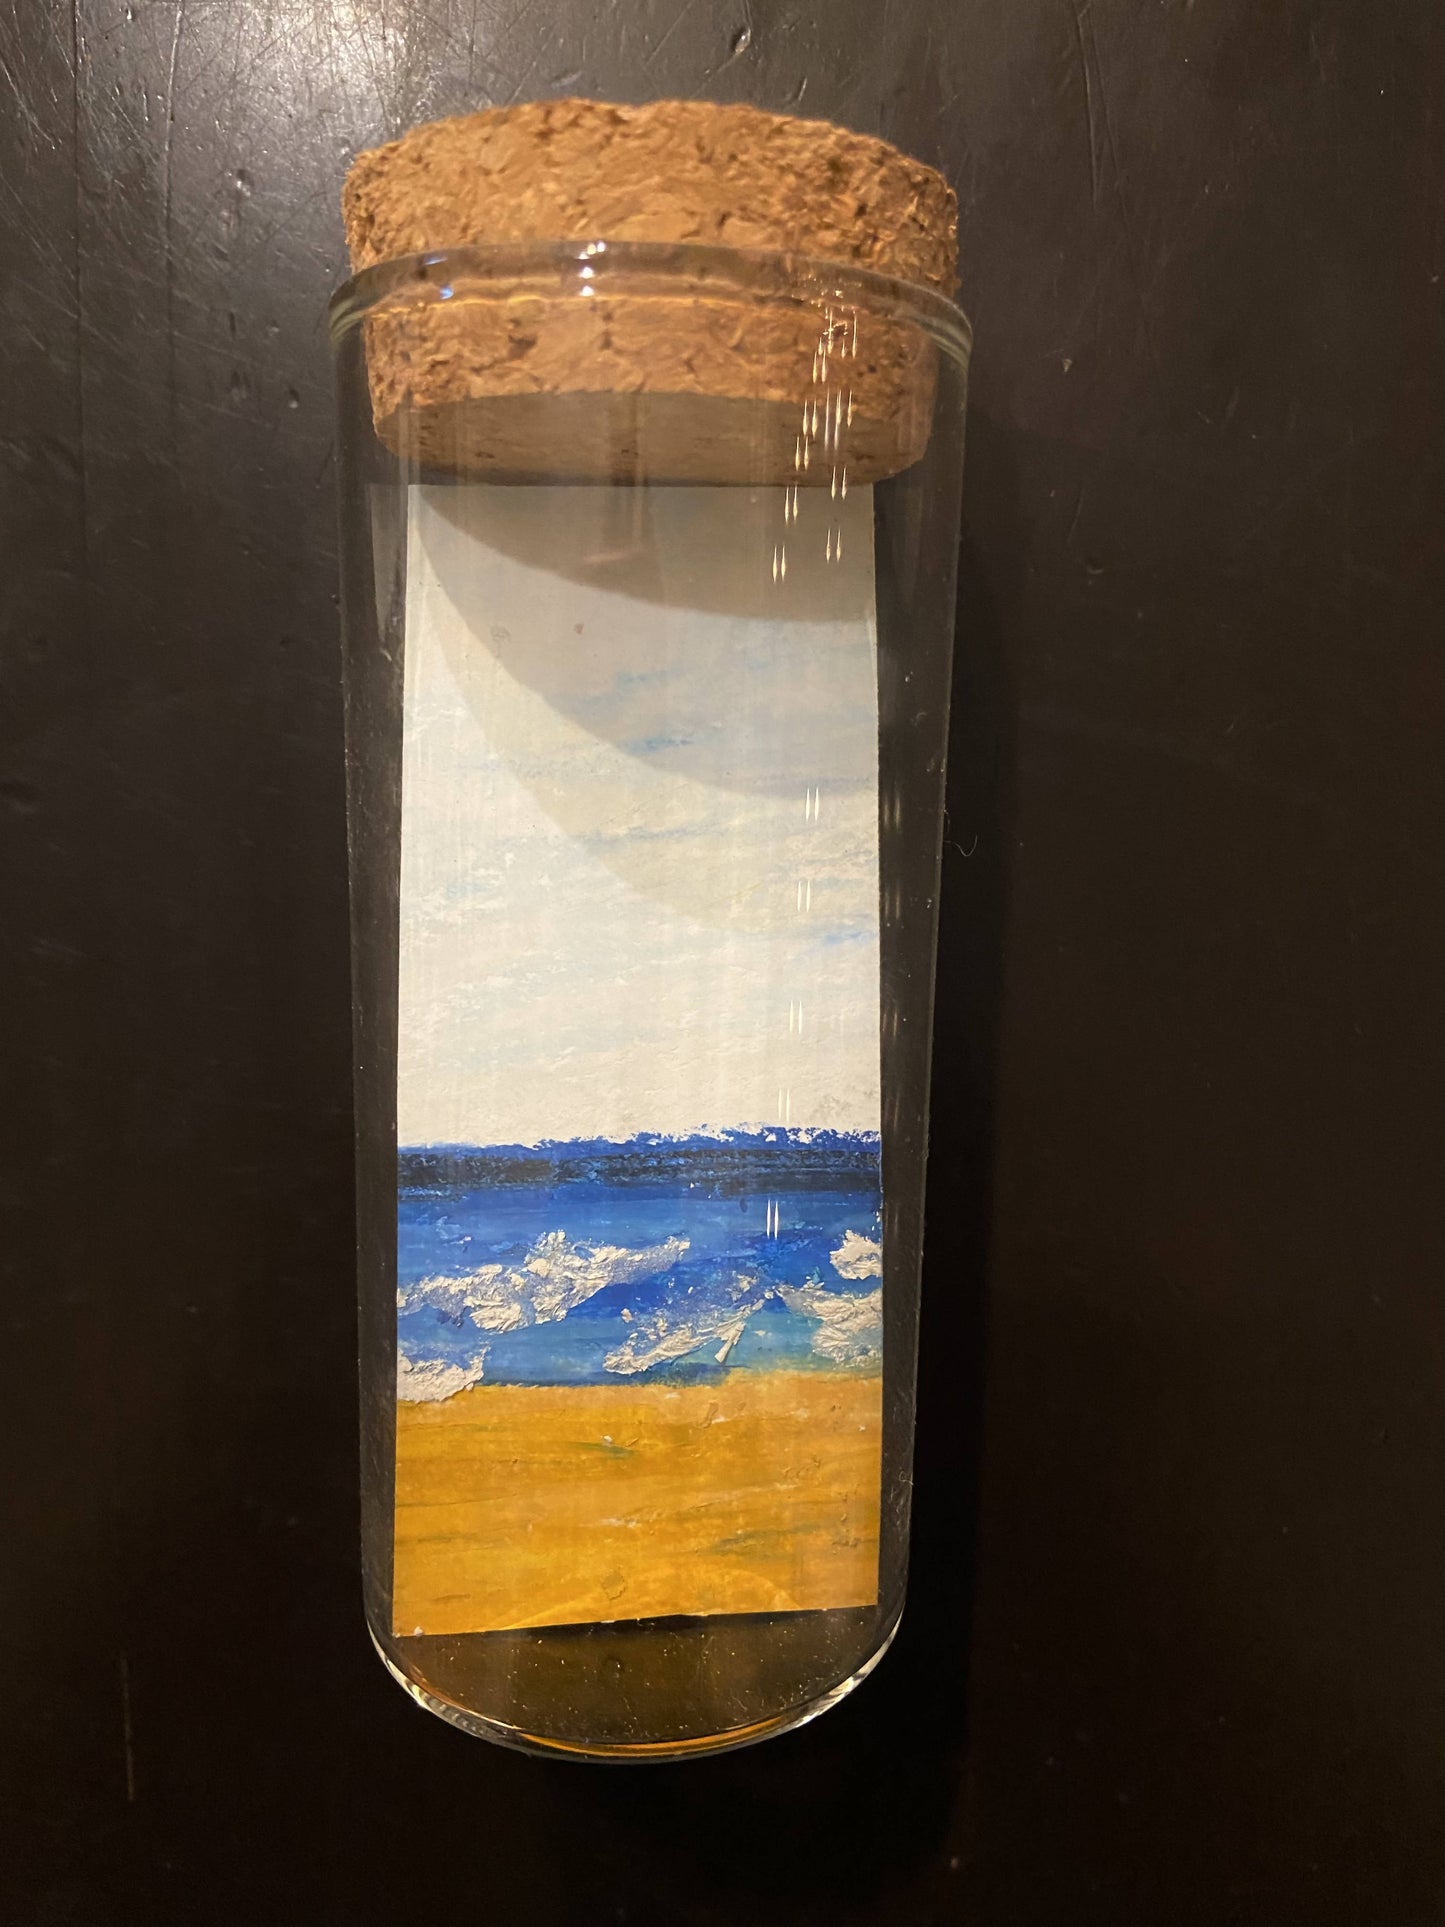 Beach in a glass